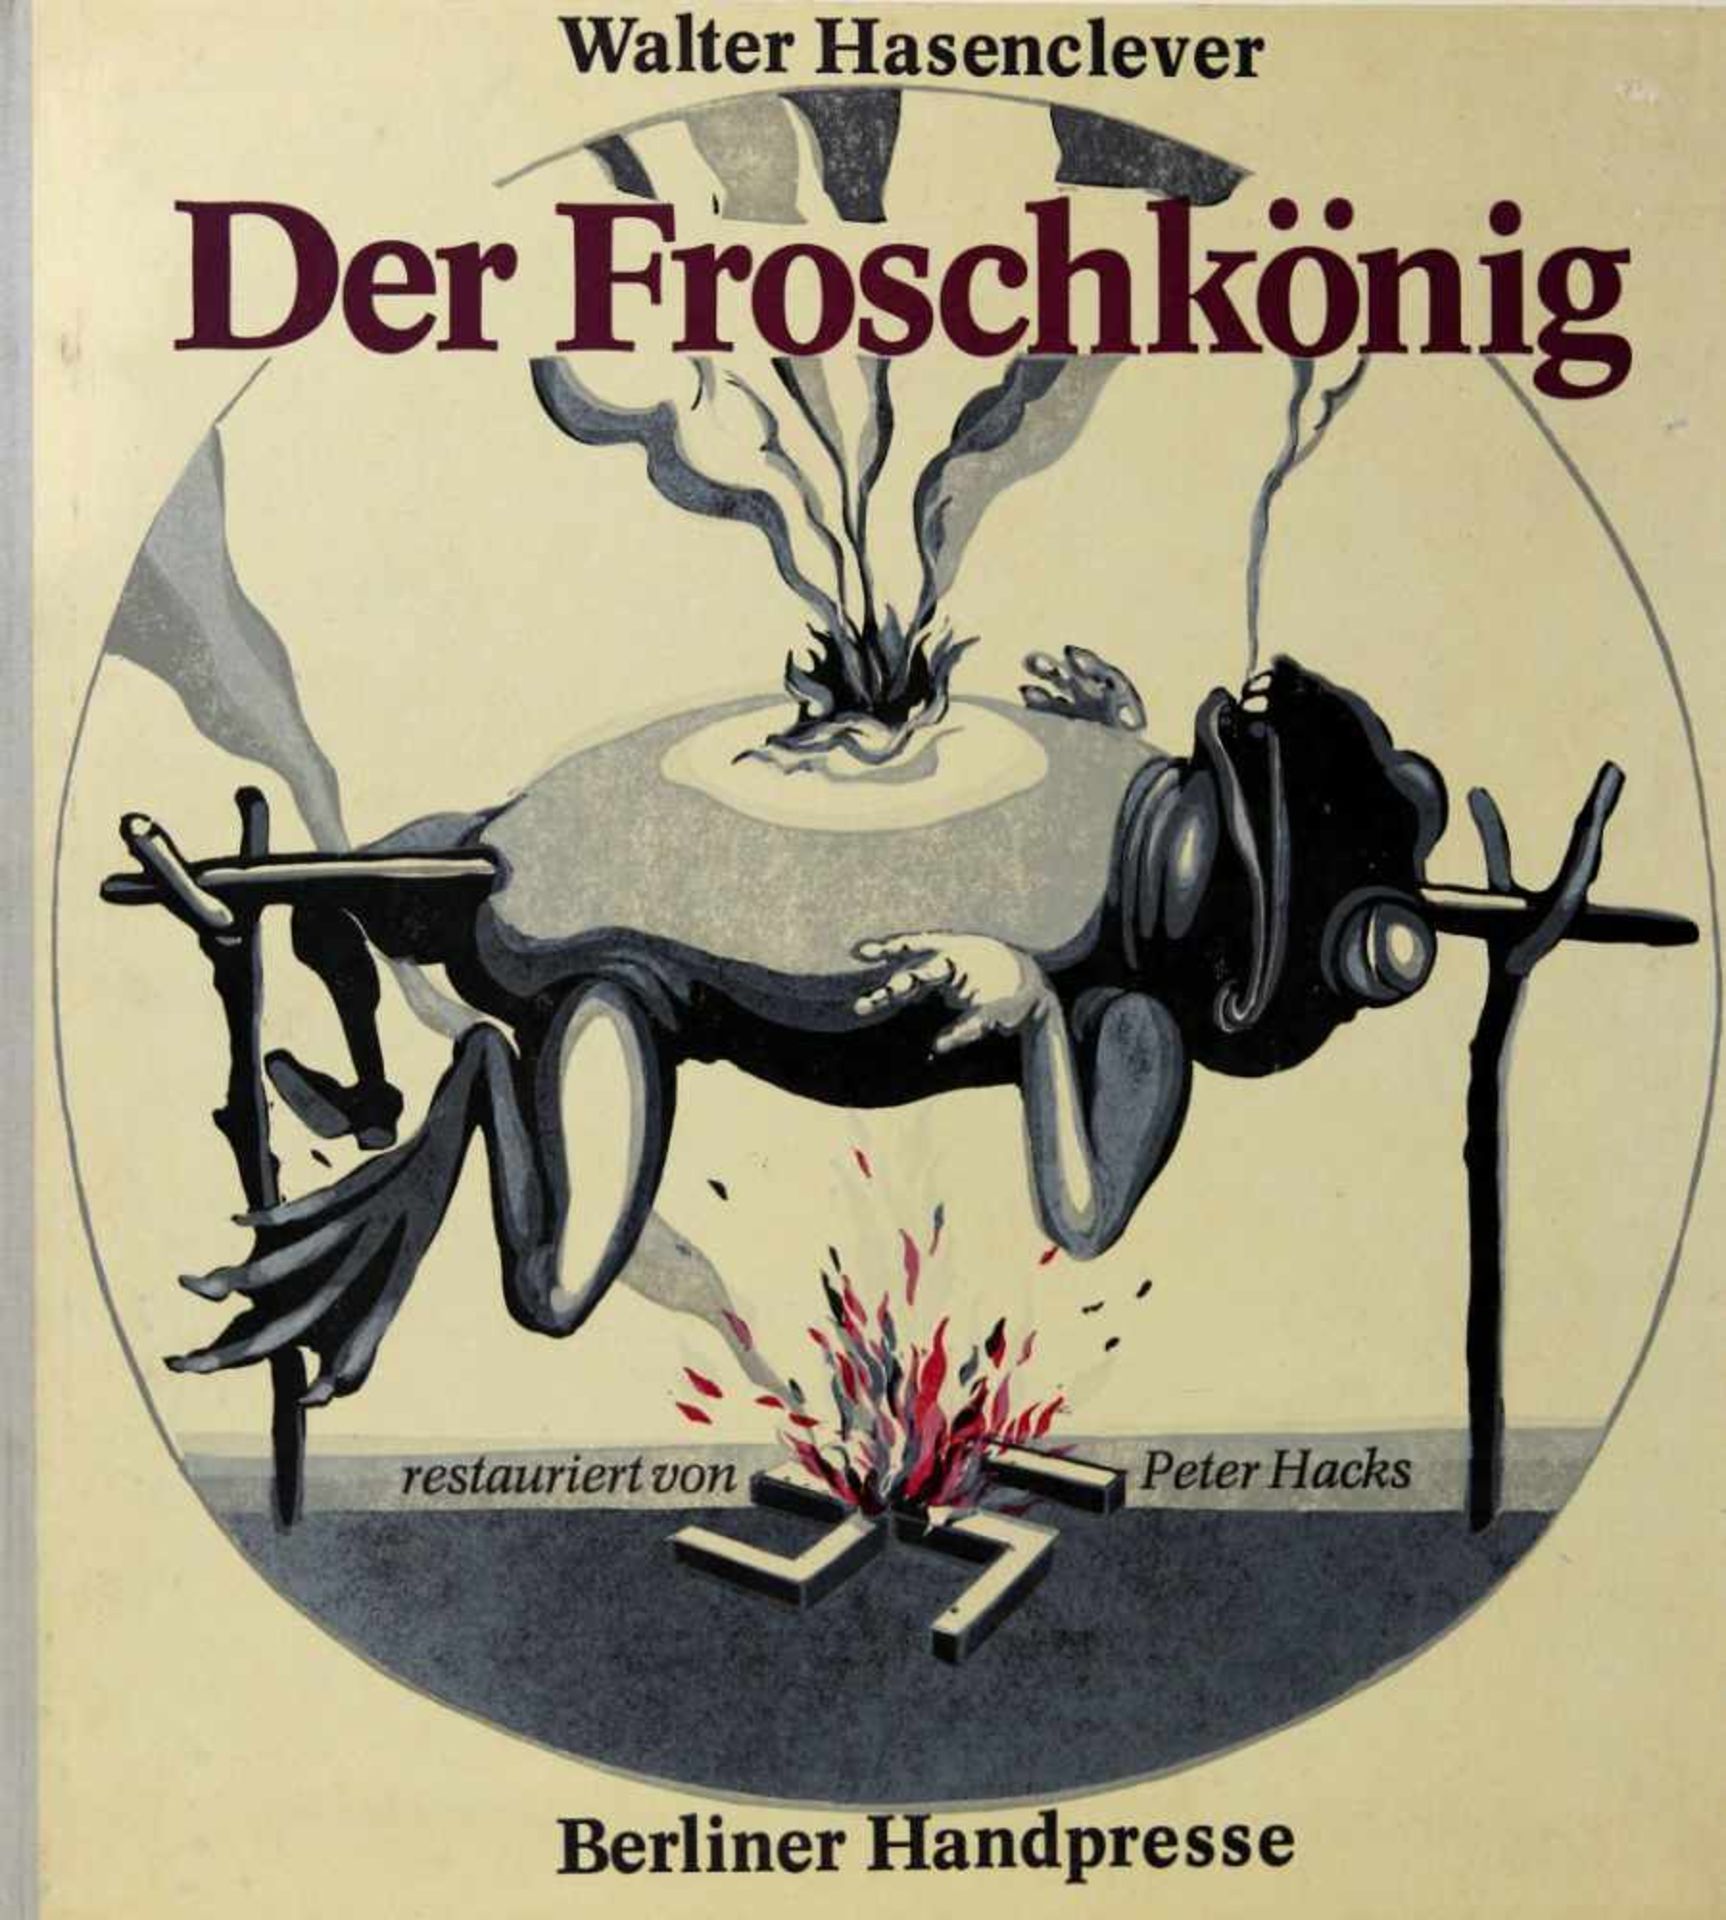 Berliner Handpresse. -Hasenclever, Walter:Der Froschkönig. Restauriert von Peter Hacks. (